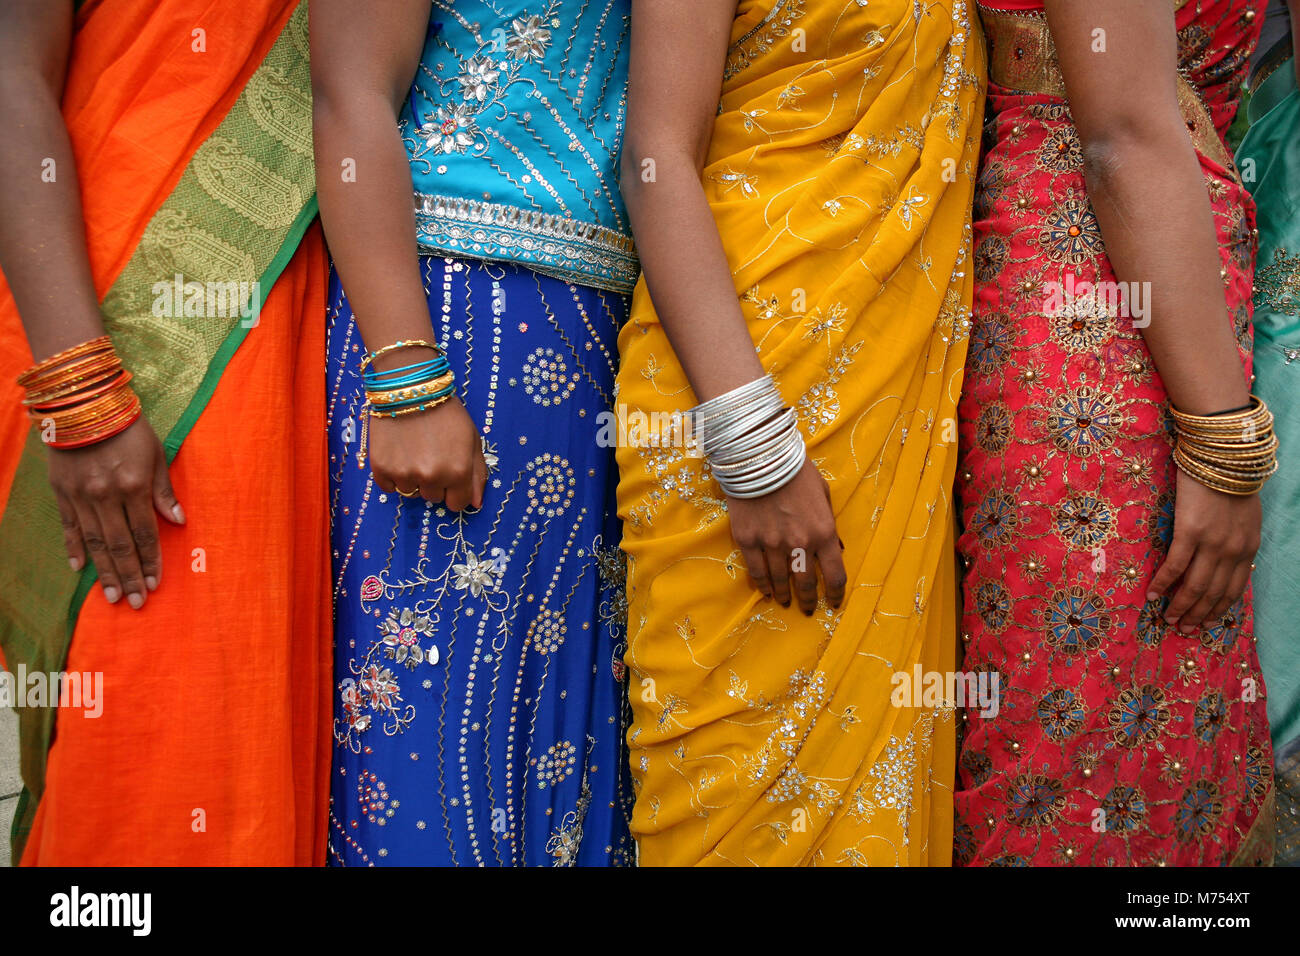 Viele bunte indische Kleider mit verschiedenen Designs aus der Nähe  Stockfotografie - Alamy